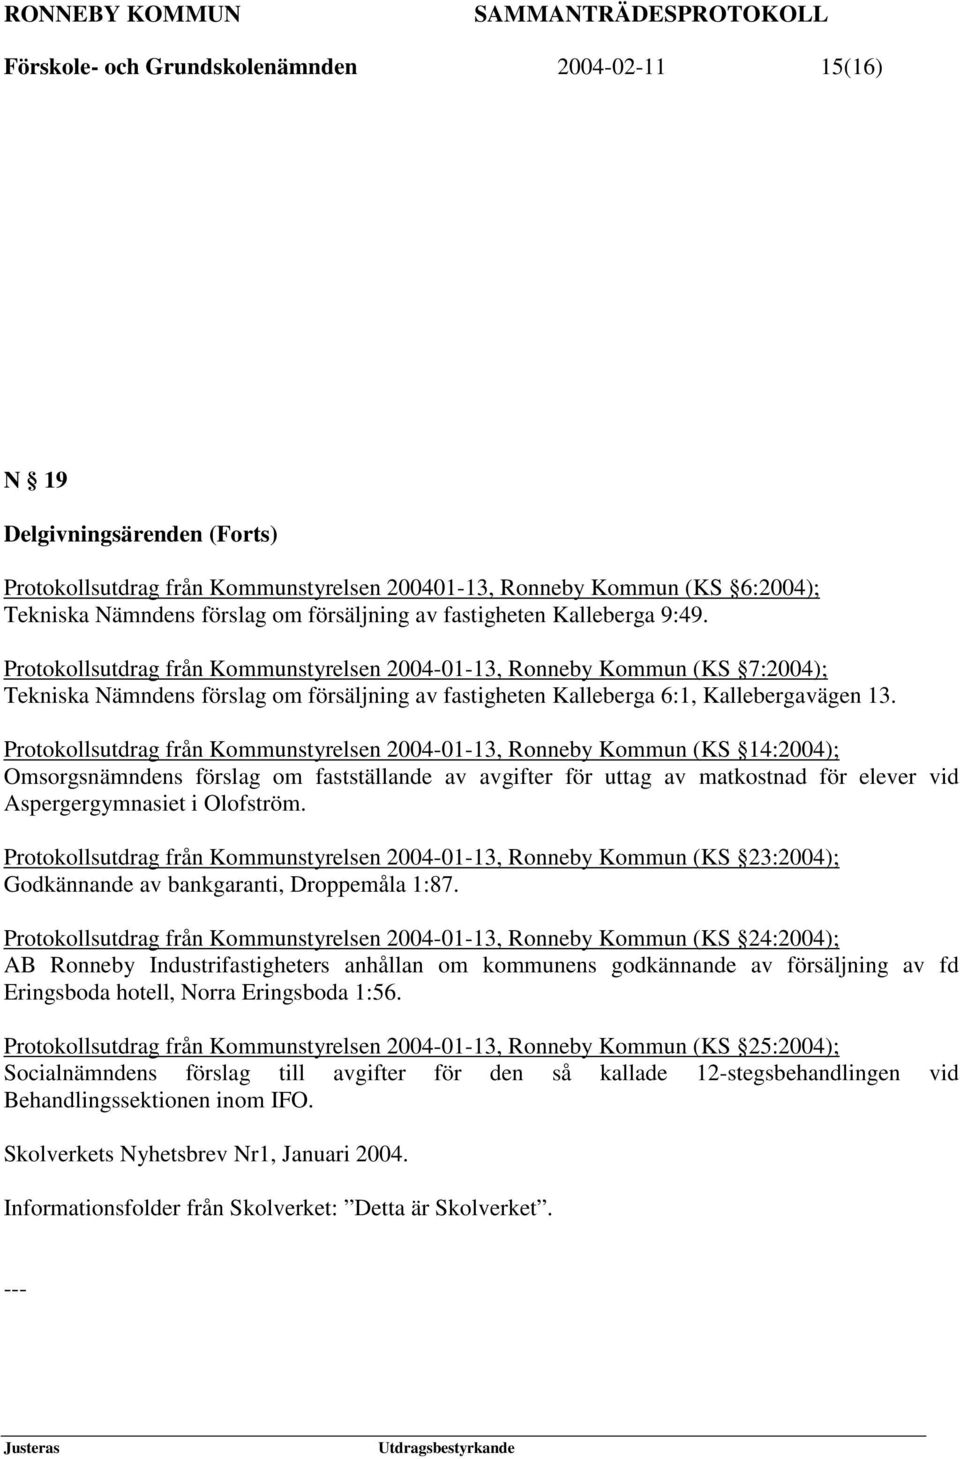 Protokollsutdrag från Kommunstyrelsen 2004-01-13, Ronneby Kommun (KS 7:2004); Tekniska Nämndens förslag om försäljning av fastigheten Kalleberga 6:1, Kallebergavägen 13.